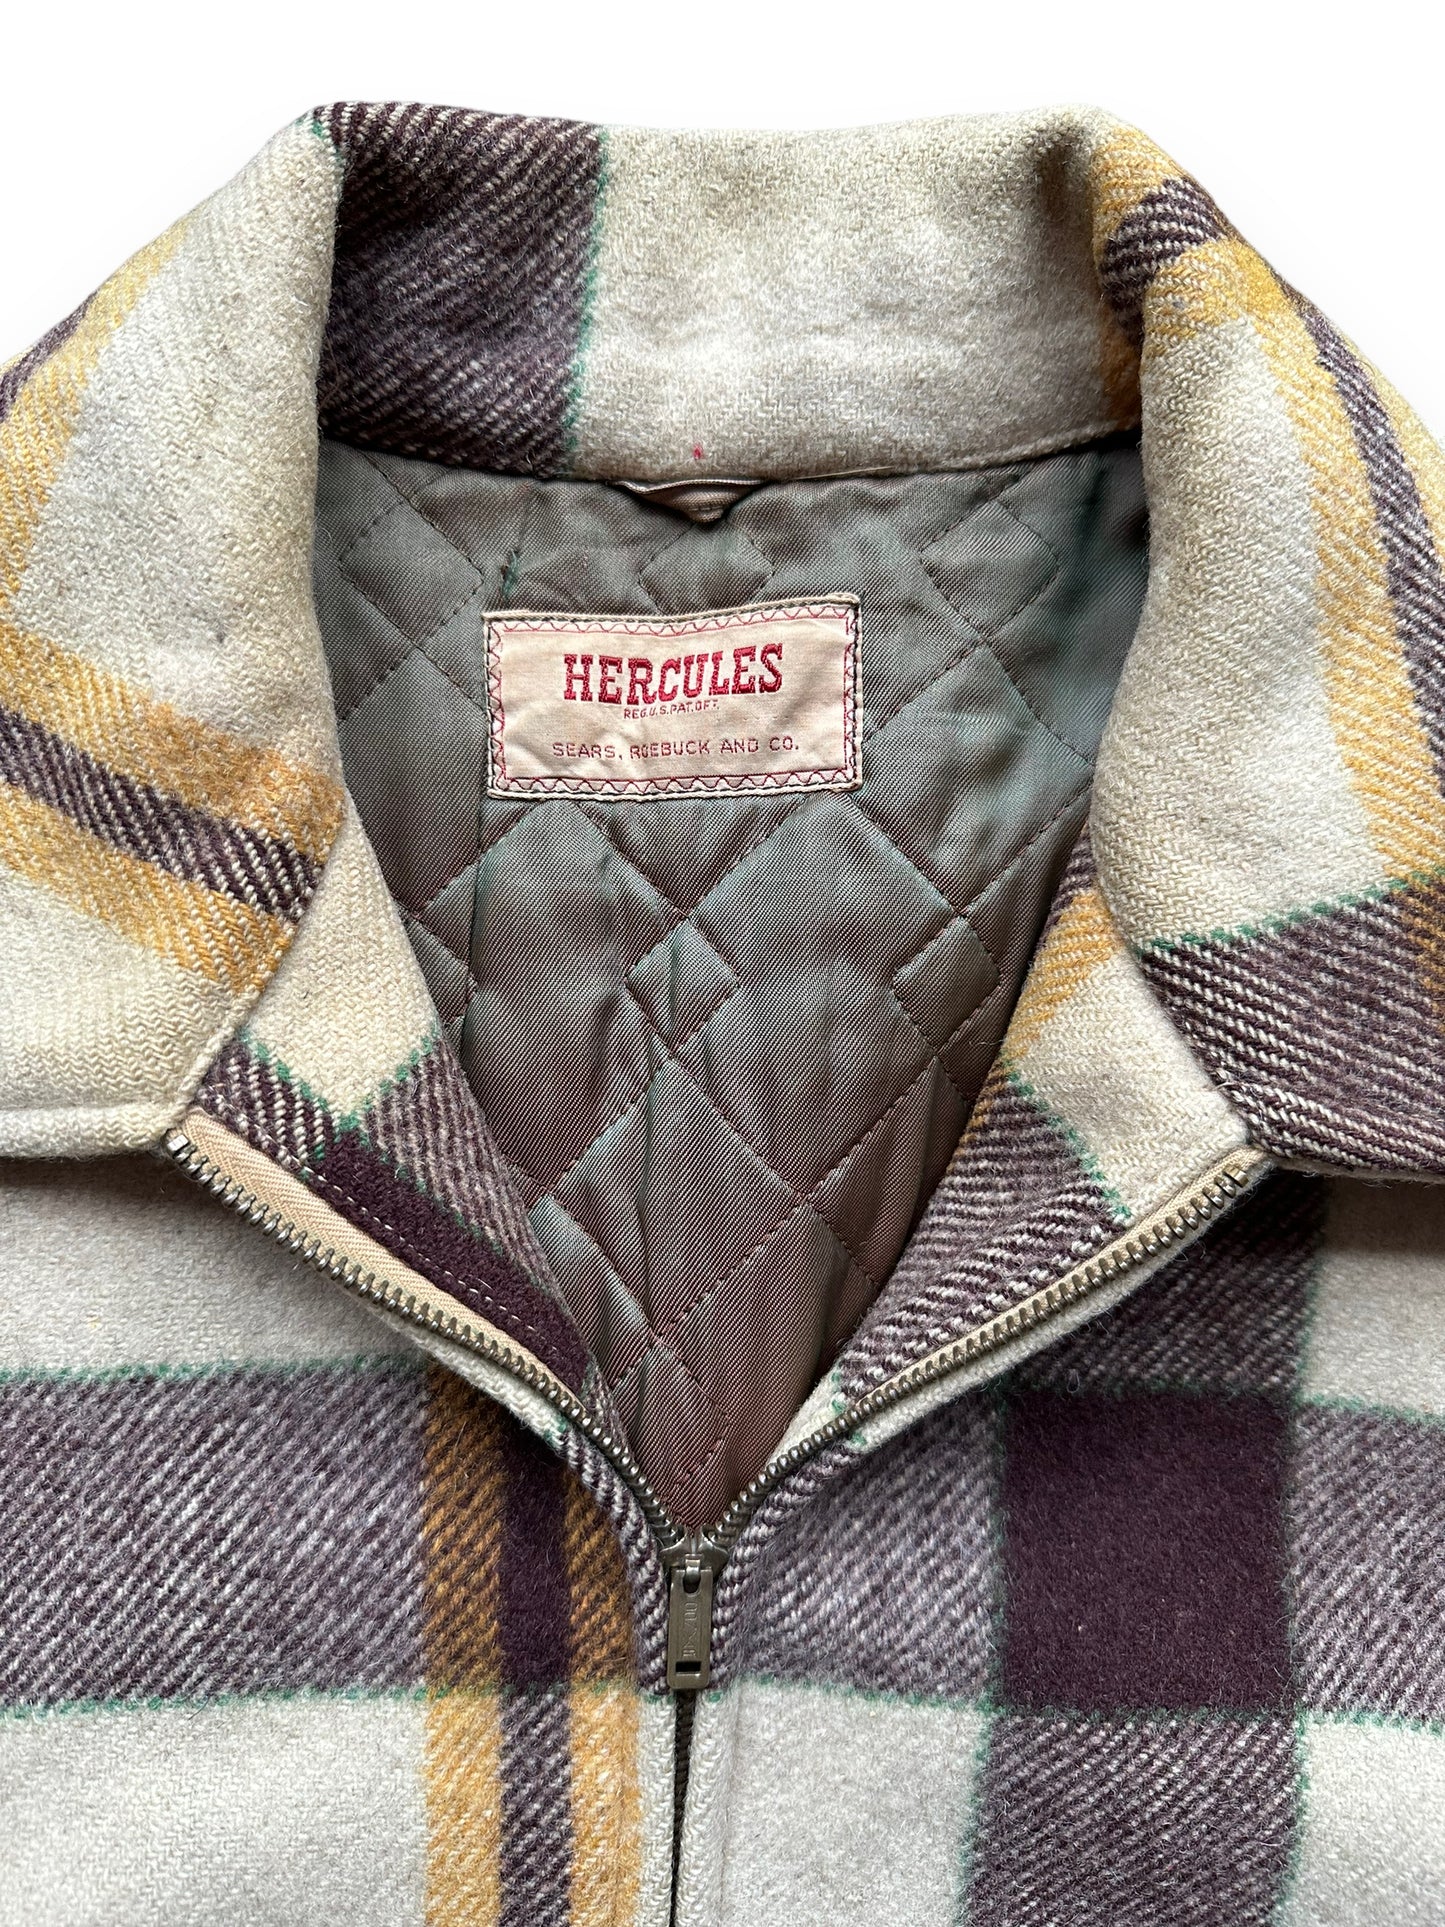 Tag View of Vintage Hercules Wool Jacket SZ XL |  Barn Owl Vintage Goods | Vintage Sears Wool Coat Seattle